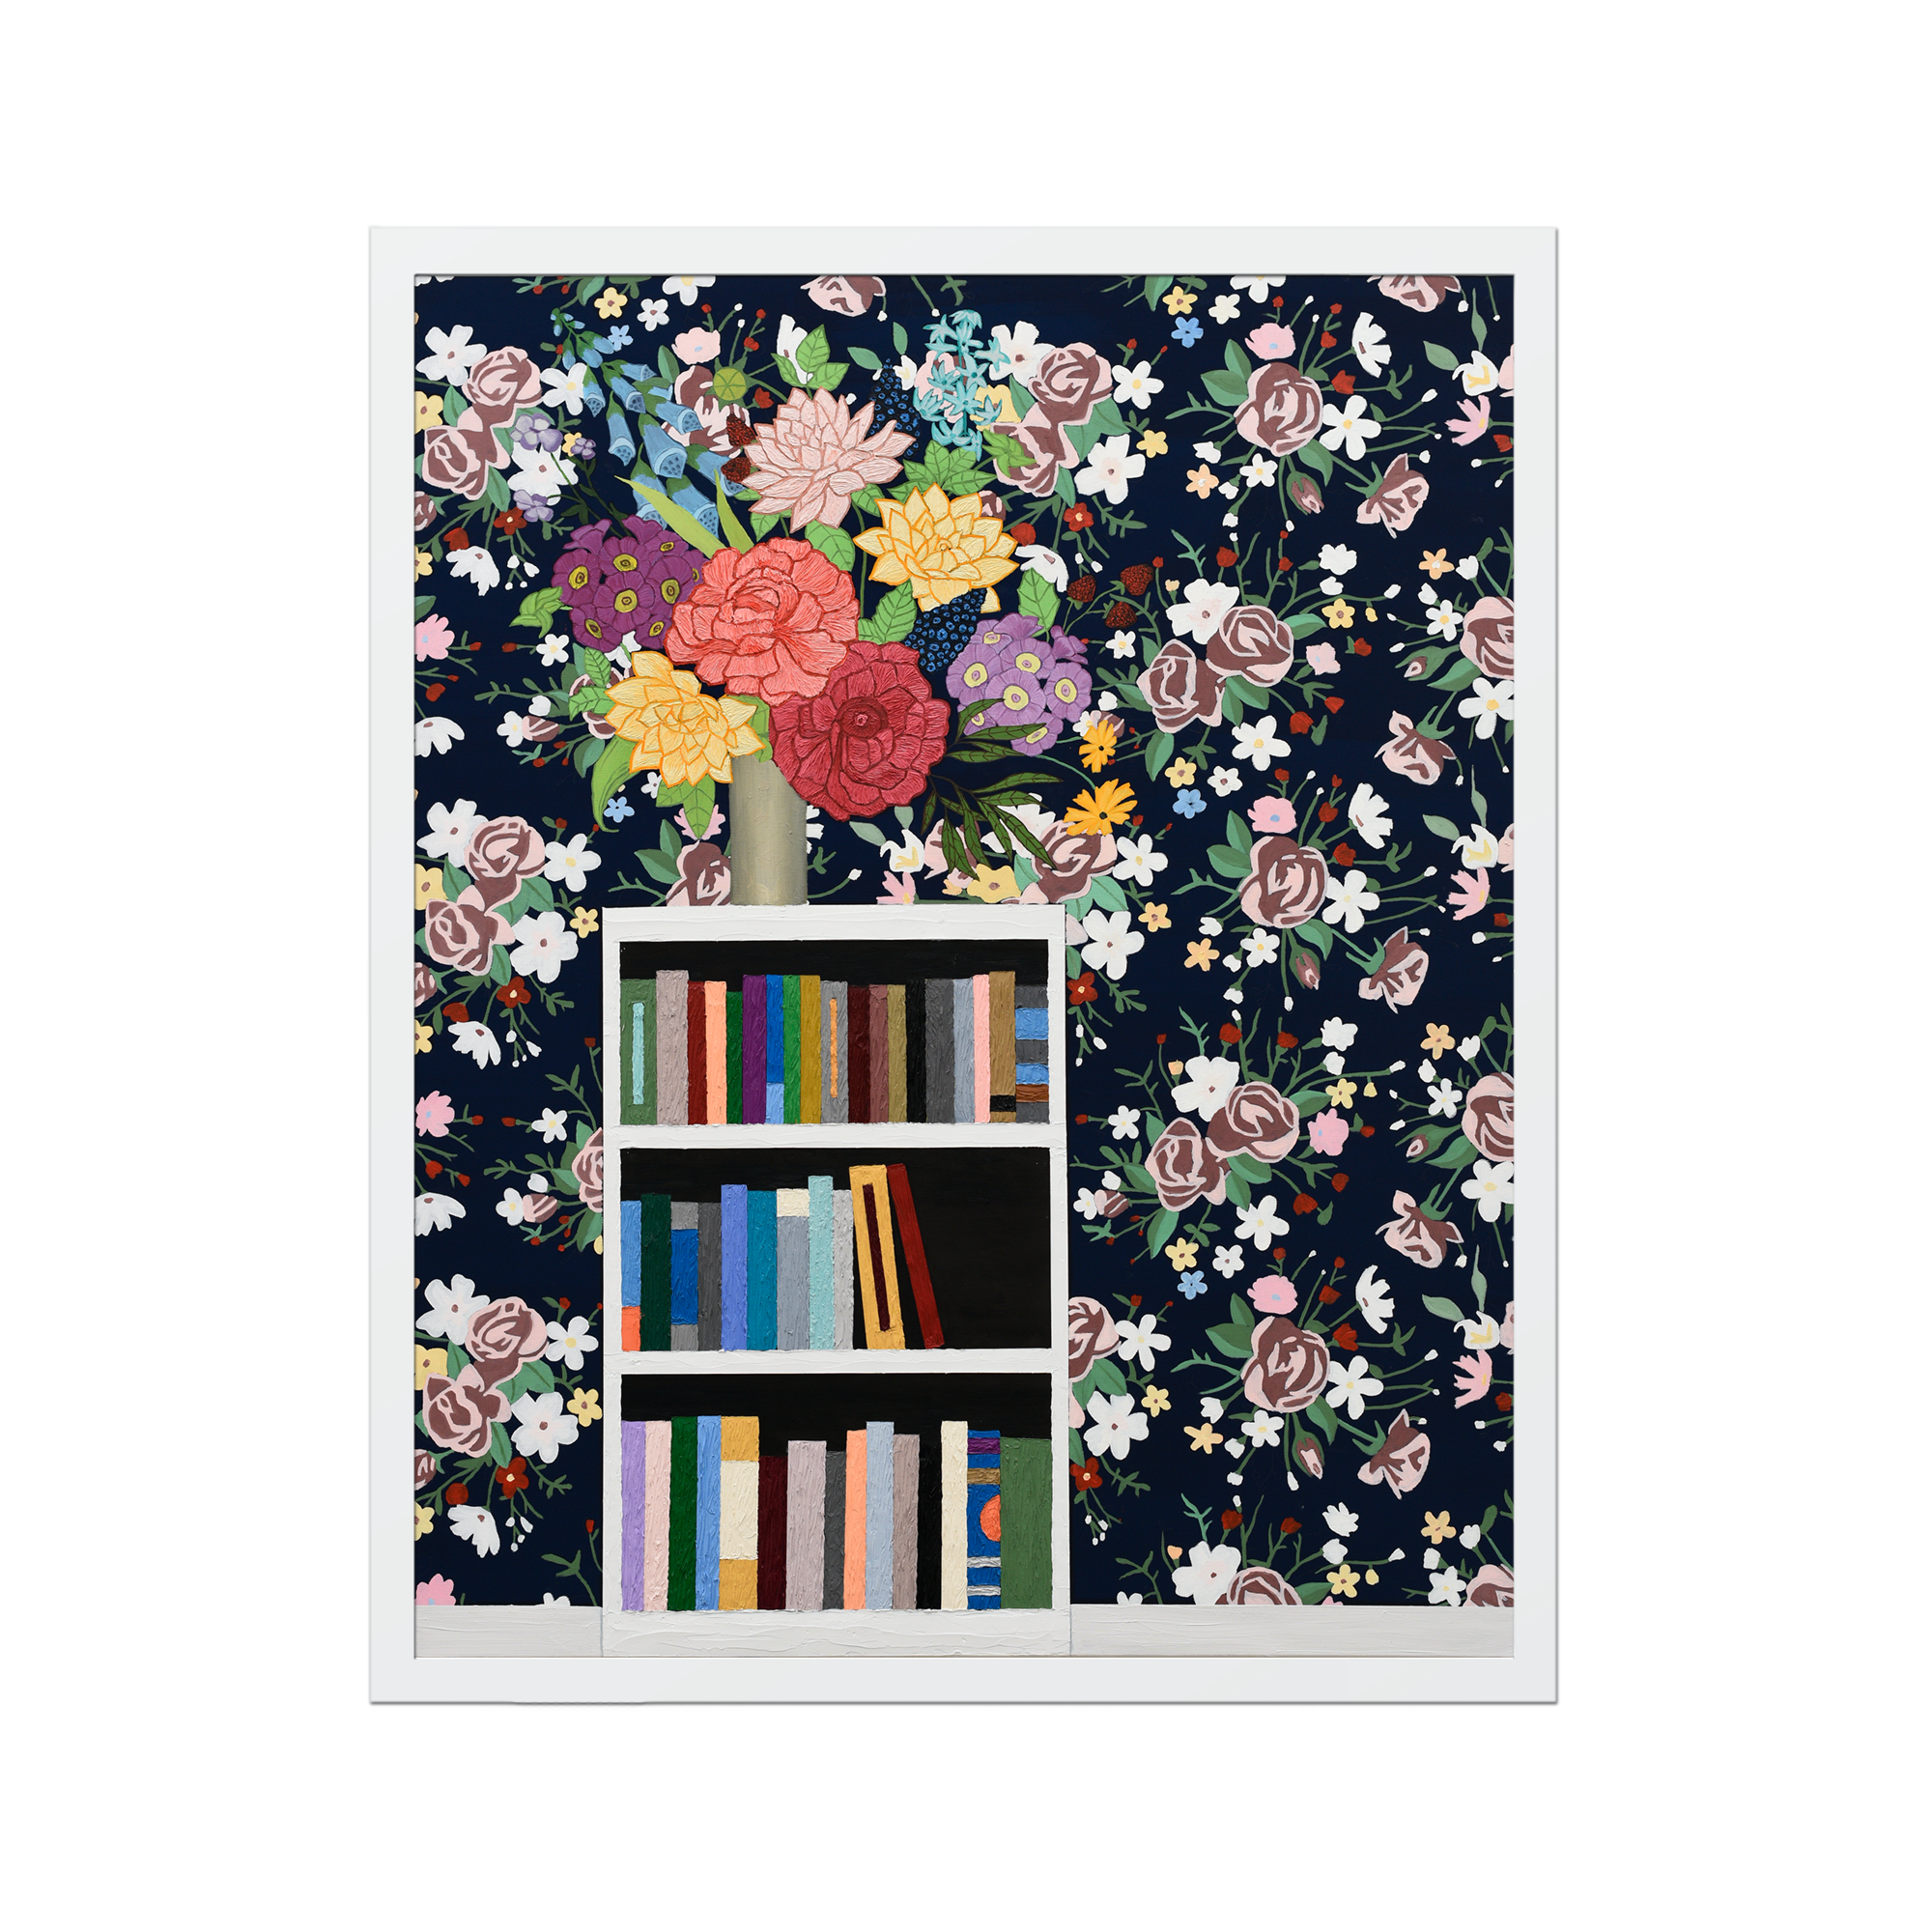 Flowers on Bookshelf